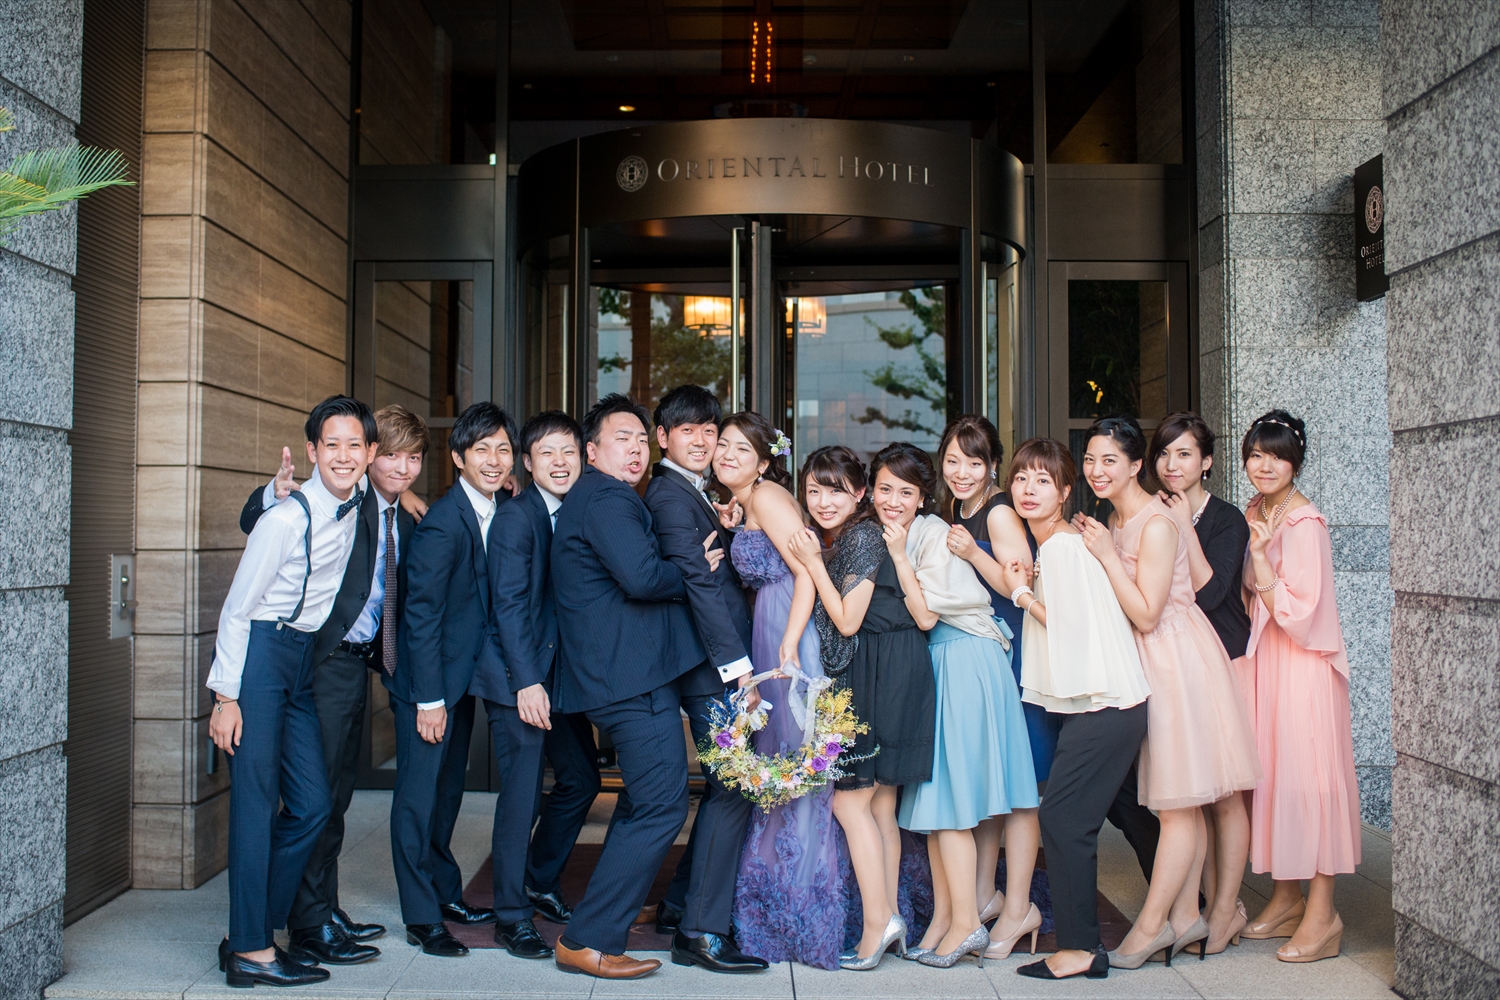 オリエンタルホテル神戸での結婚式写真撮影 結婚式ビデオ撮影 写真撮影なら月山映像へ 大阪 神戸 京都